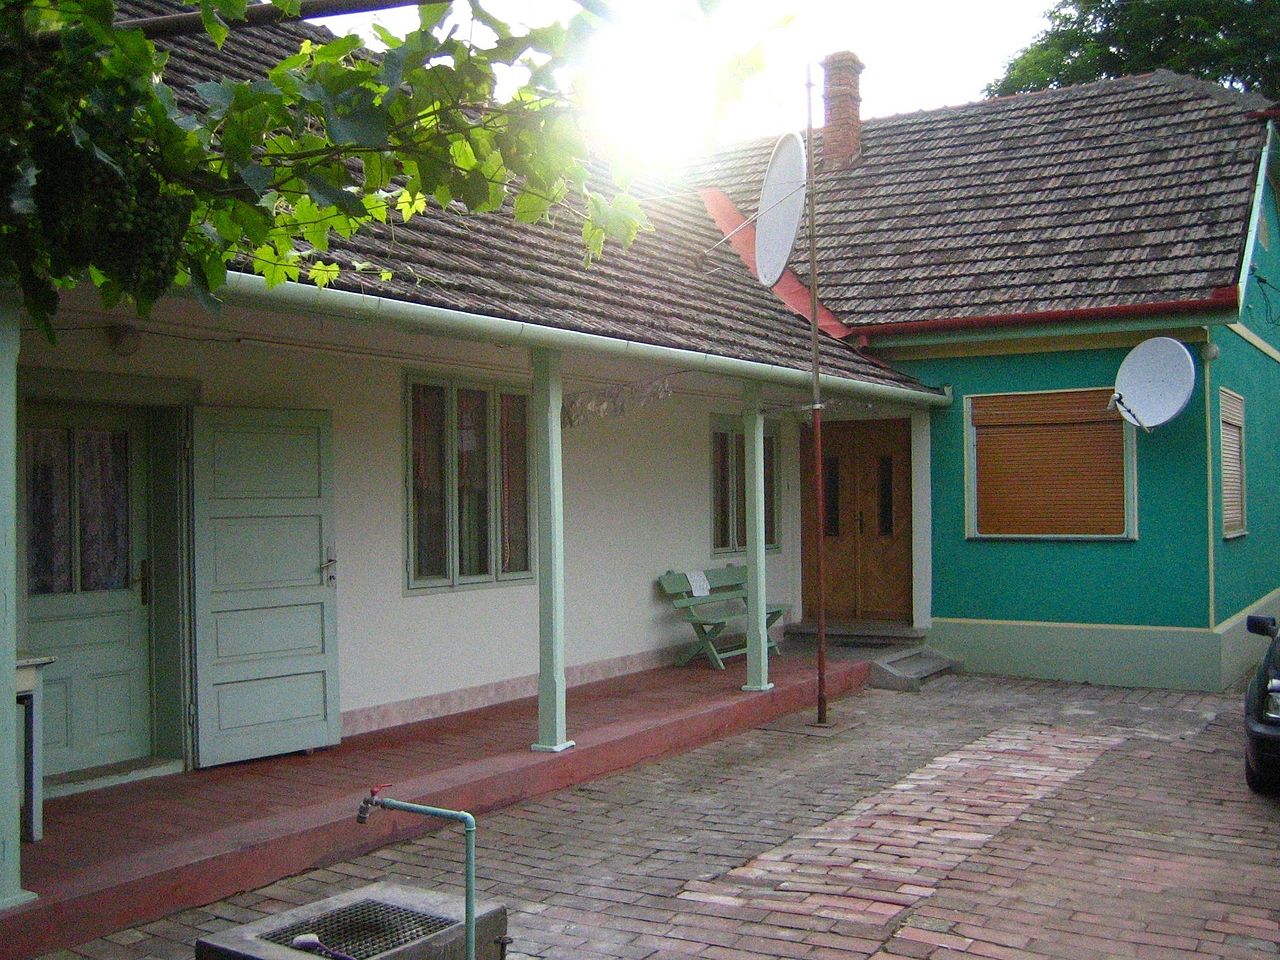 Johann Péter Weissmüller's Boyhood Home